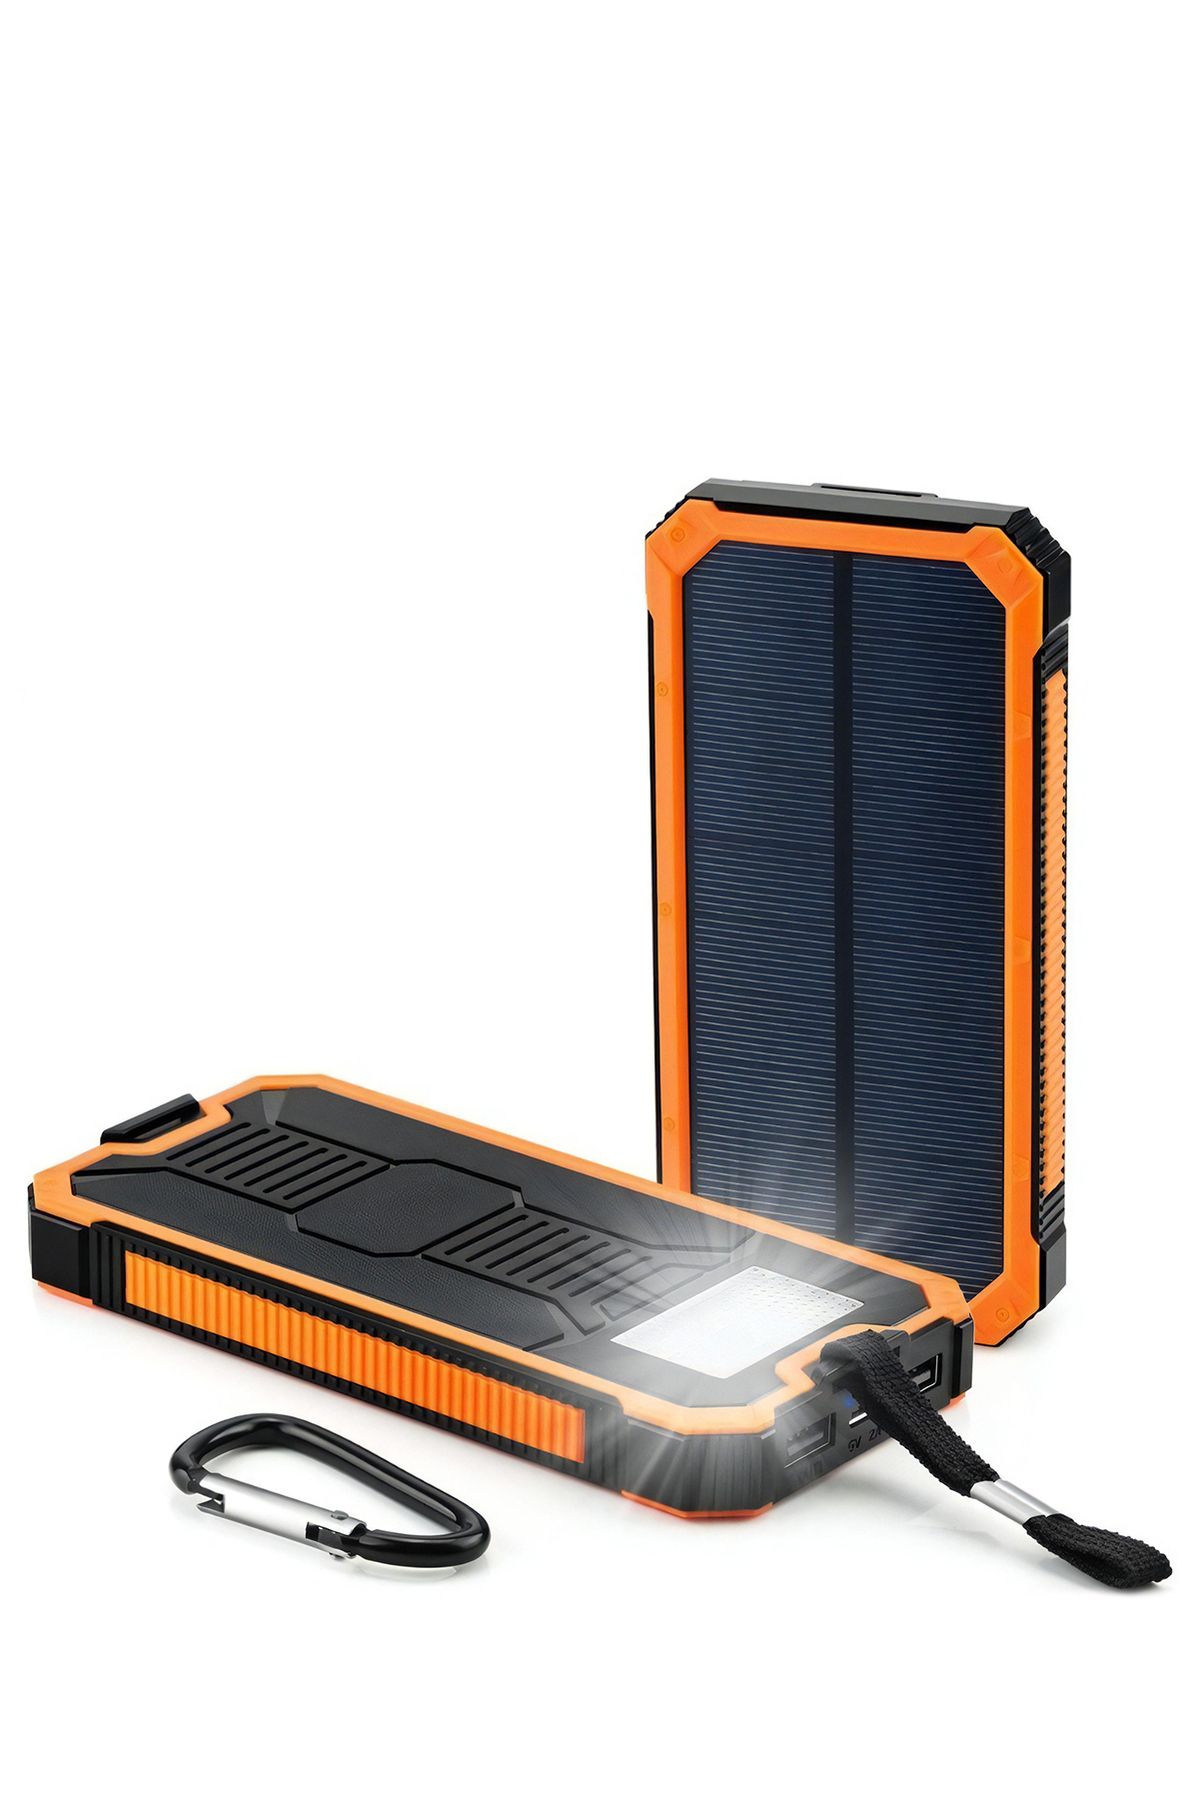 Deji Güneş Enerjili Solar Powerbank 10000 mah Led Işıklı Taşınabilir Şarj Cihazı Turuncu